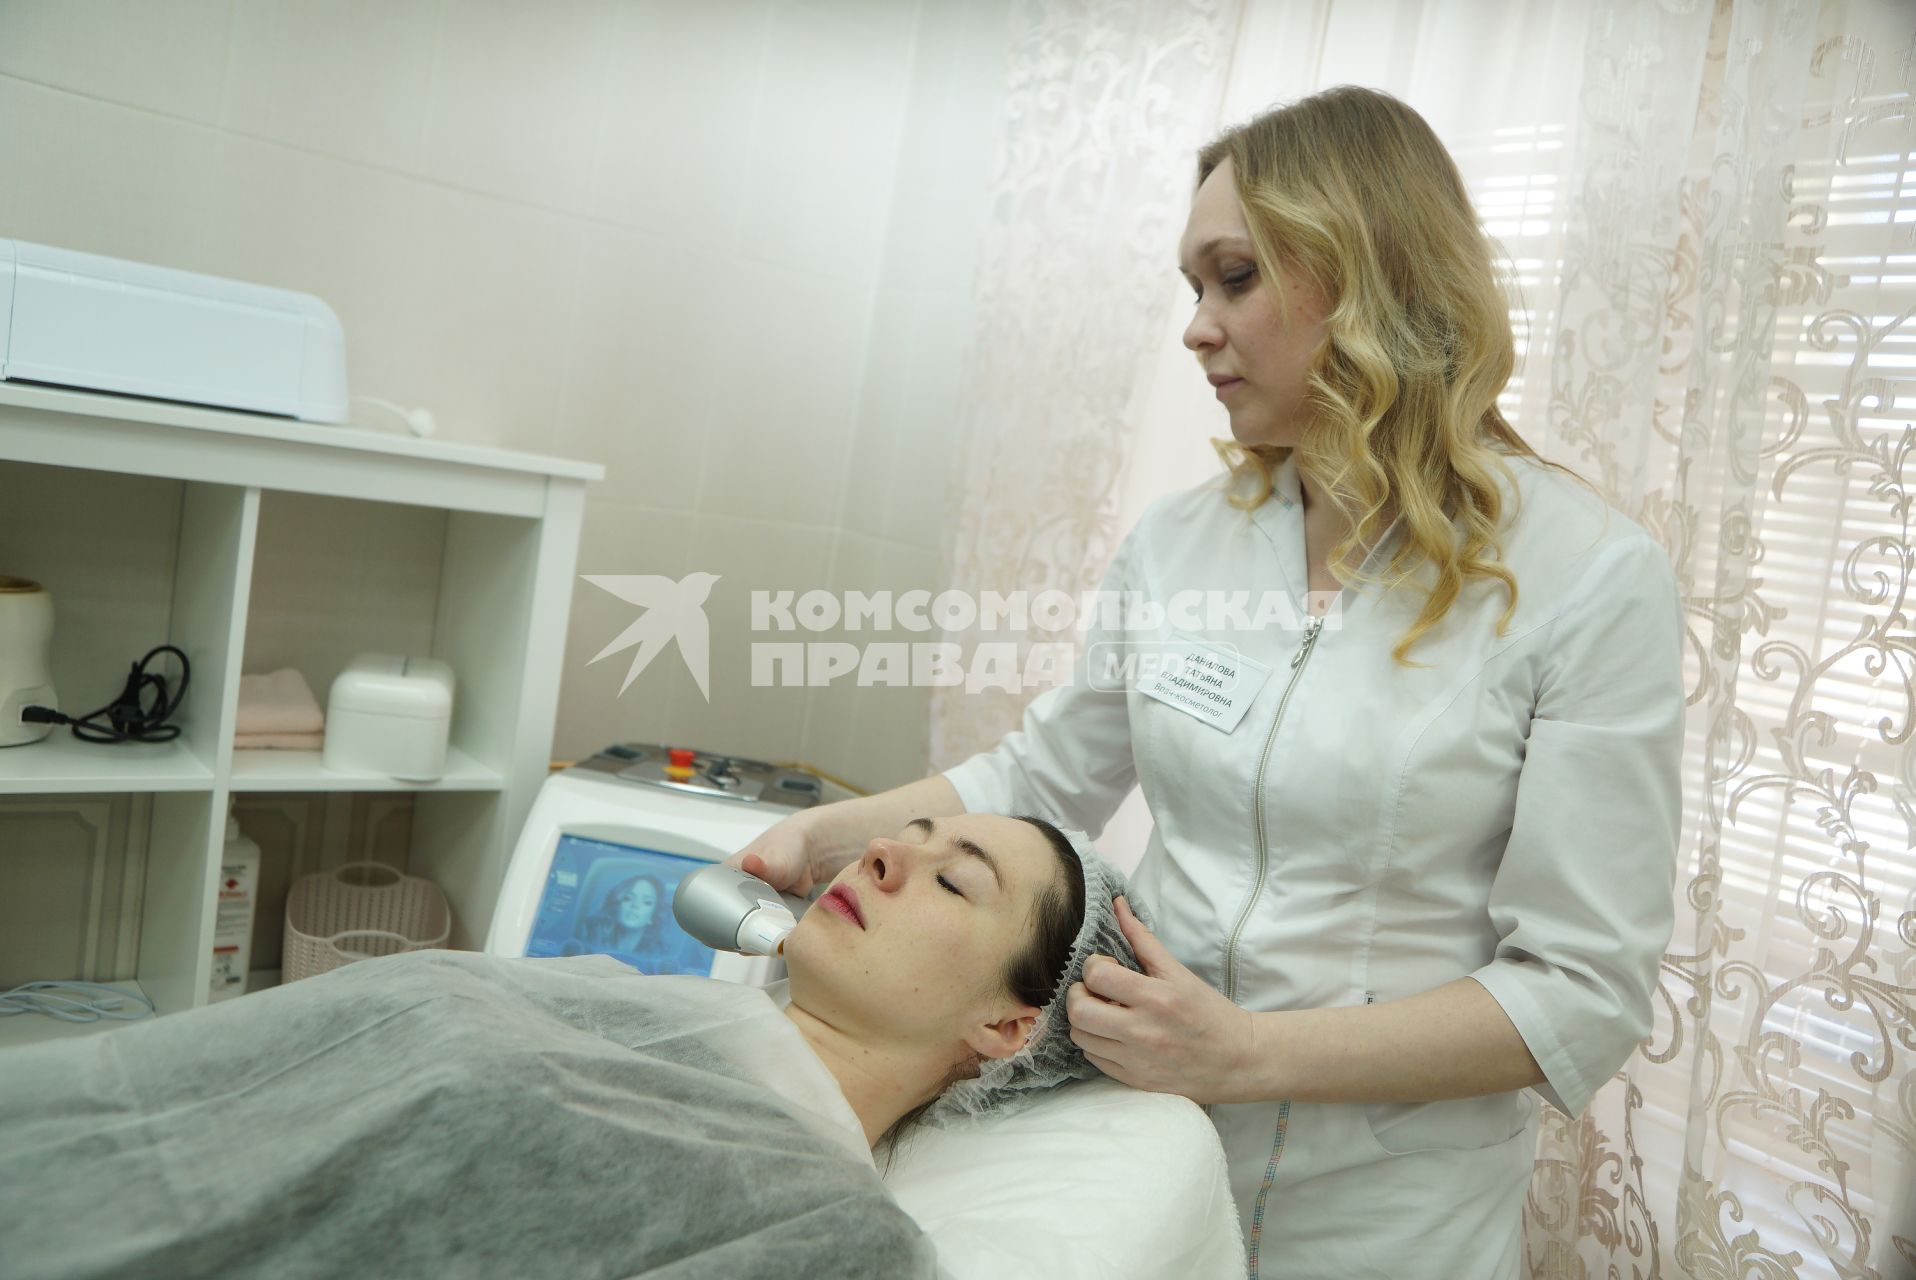 Екатеринбург. Женщина в салоне красоты на процедуре у косметолога, по ультразвуковой чистке лица